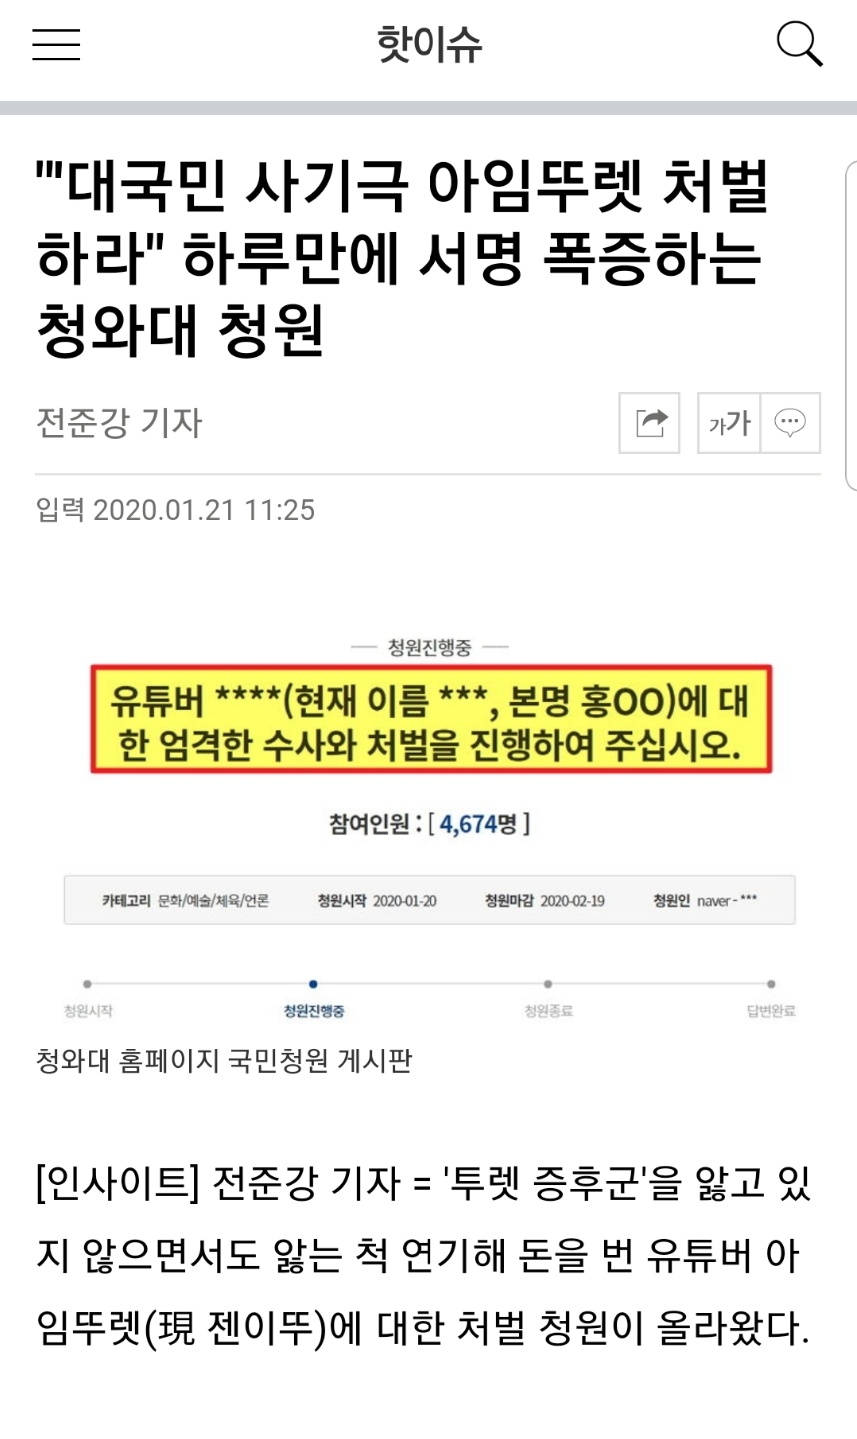 '틱 장애 거짓연기' 아임뚜렛 최신 근황